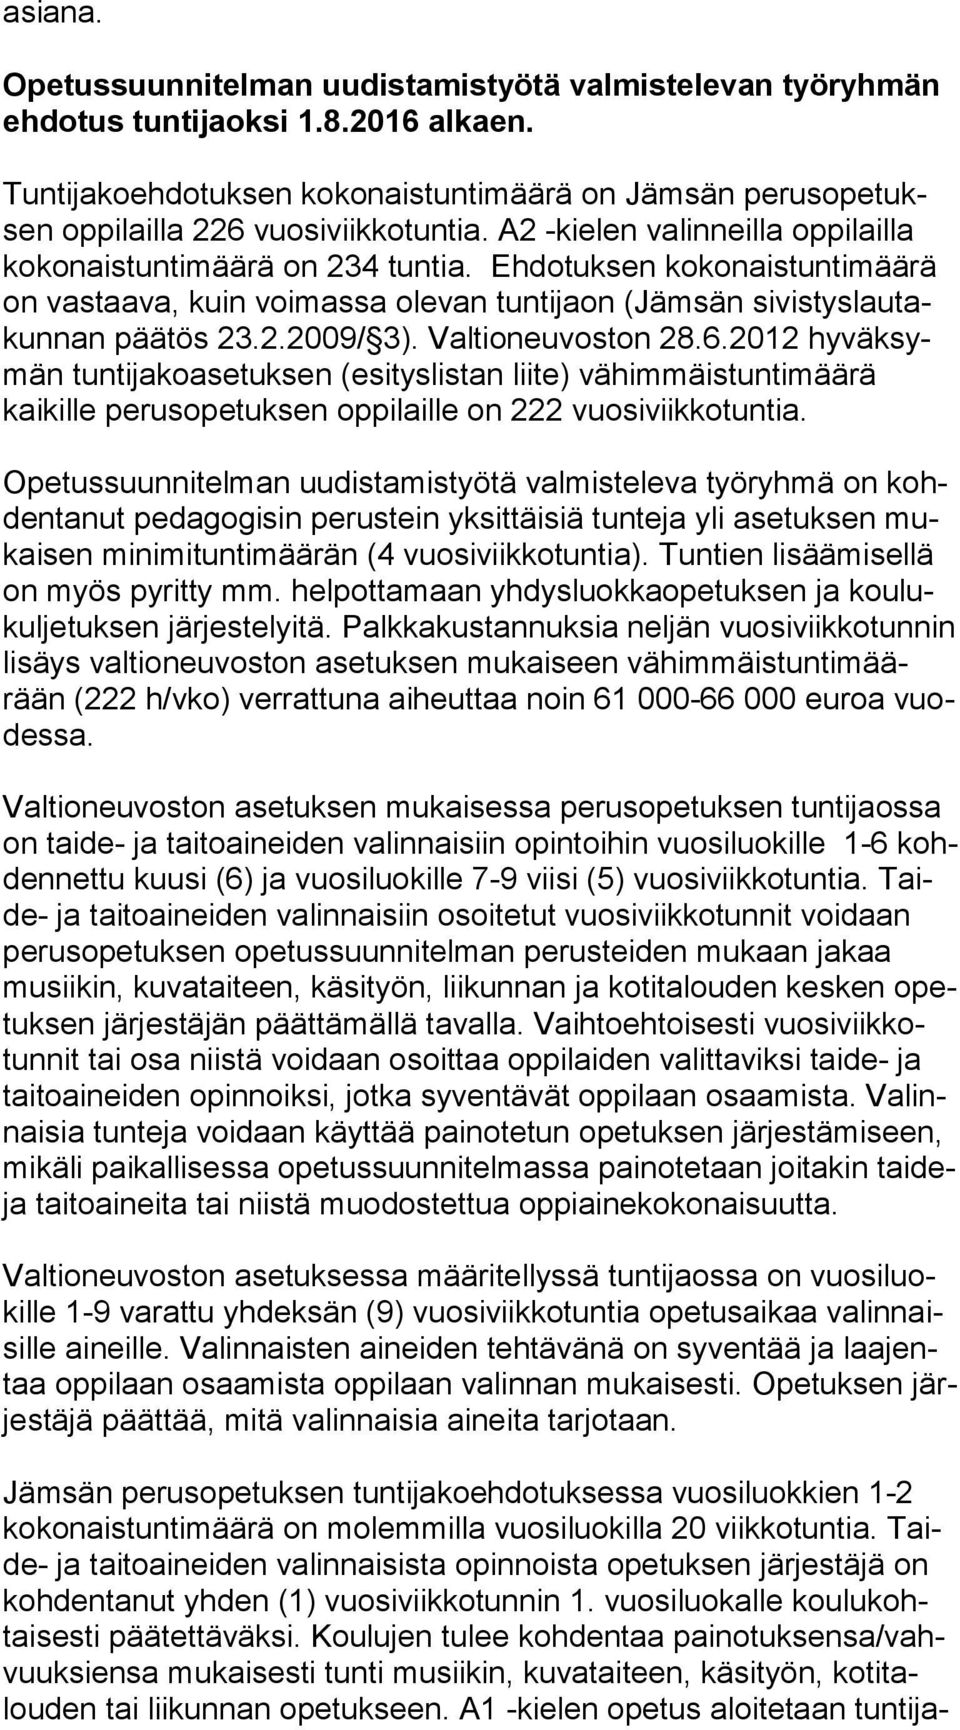 Ehdotuksen kokonaistuntimäärä on vastaava, kuin voimassa olevan tuntijaon (Jämsän si vis tys lau takun nan päätös 23.2.2009/ 3). Valtioneuvoston 28.6.